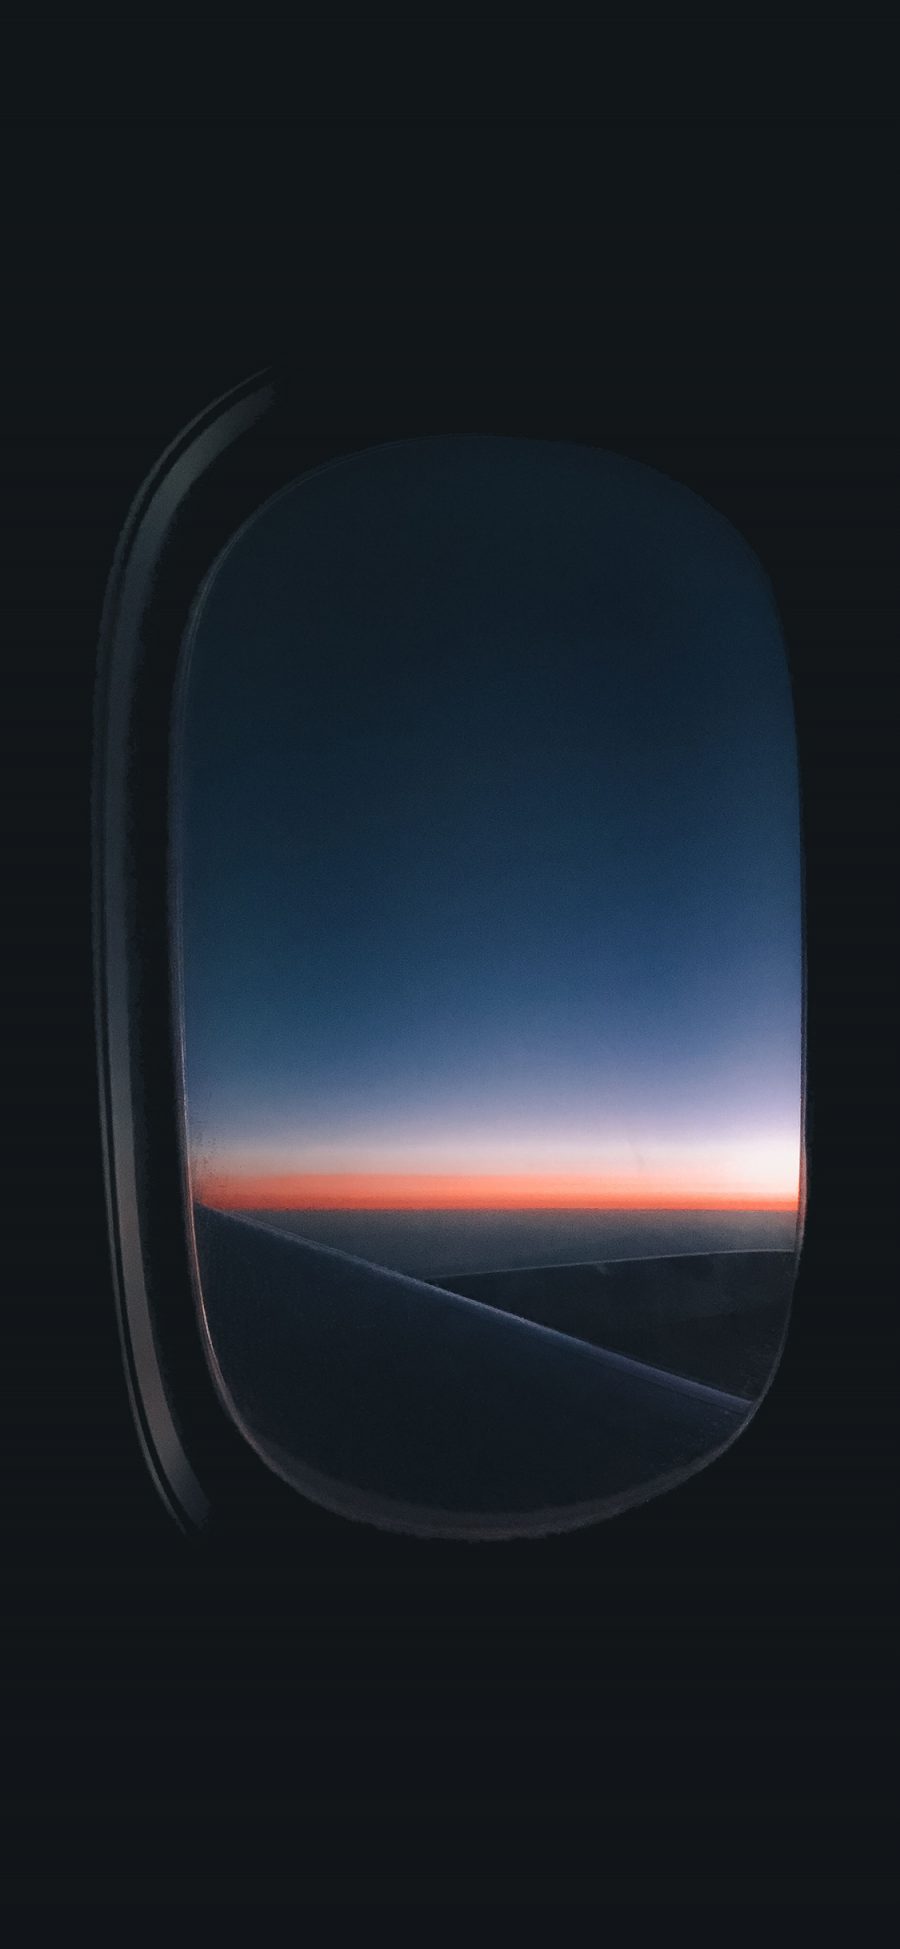 [2436×1125]飞机窗 夕阳 自然美景 苹果手机壁纸图片